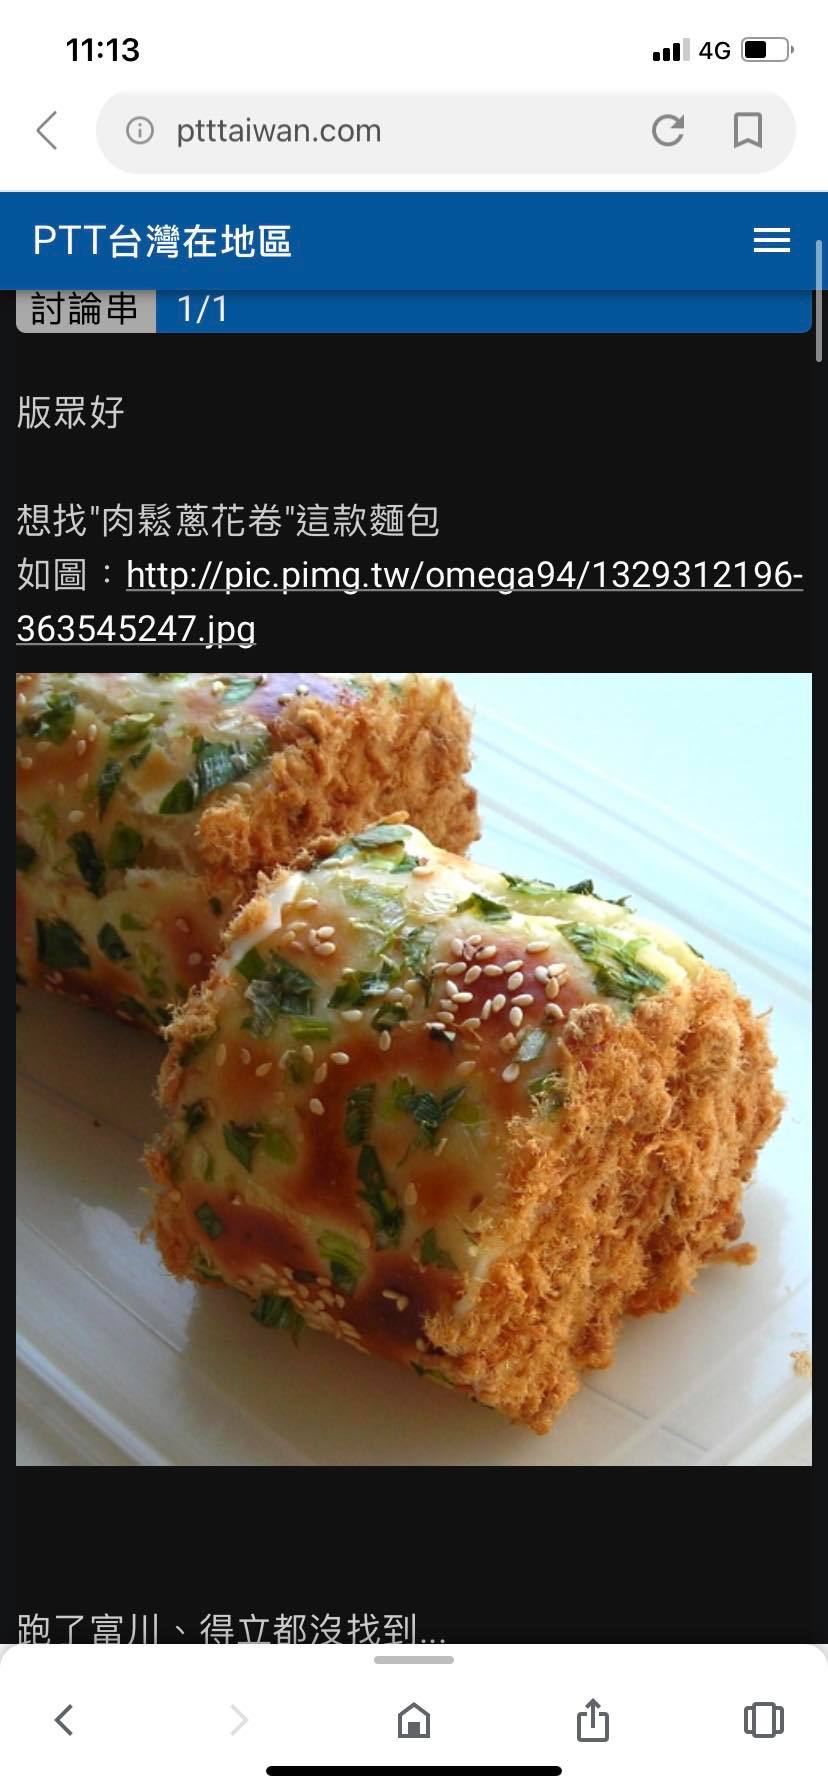 [問題] 請問台南哪裡找的到肉鬆蔥花捲麵包